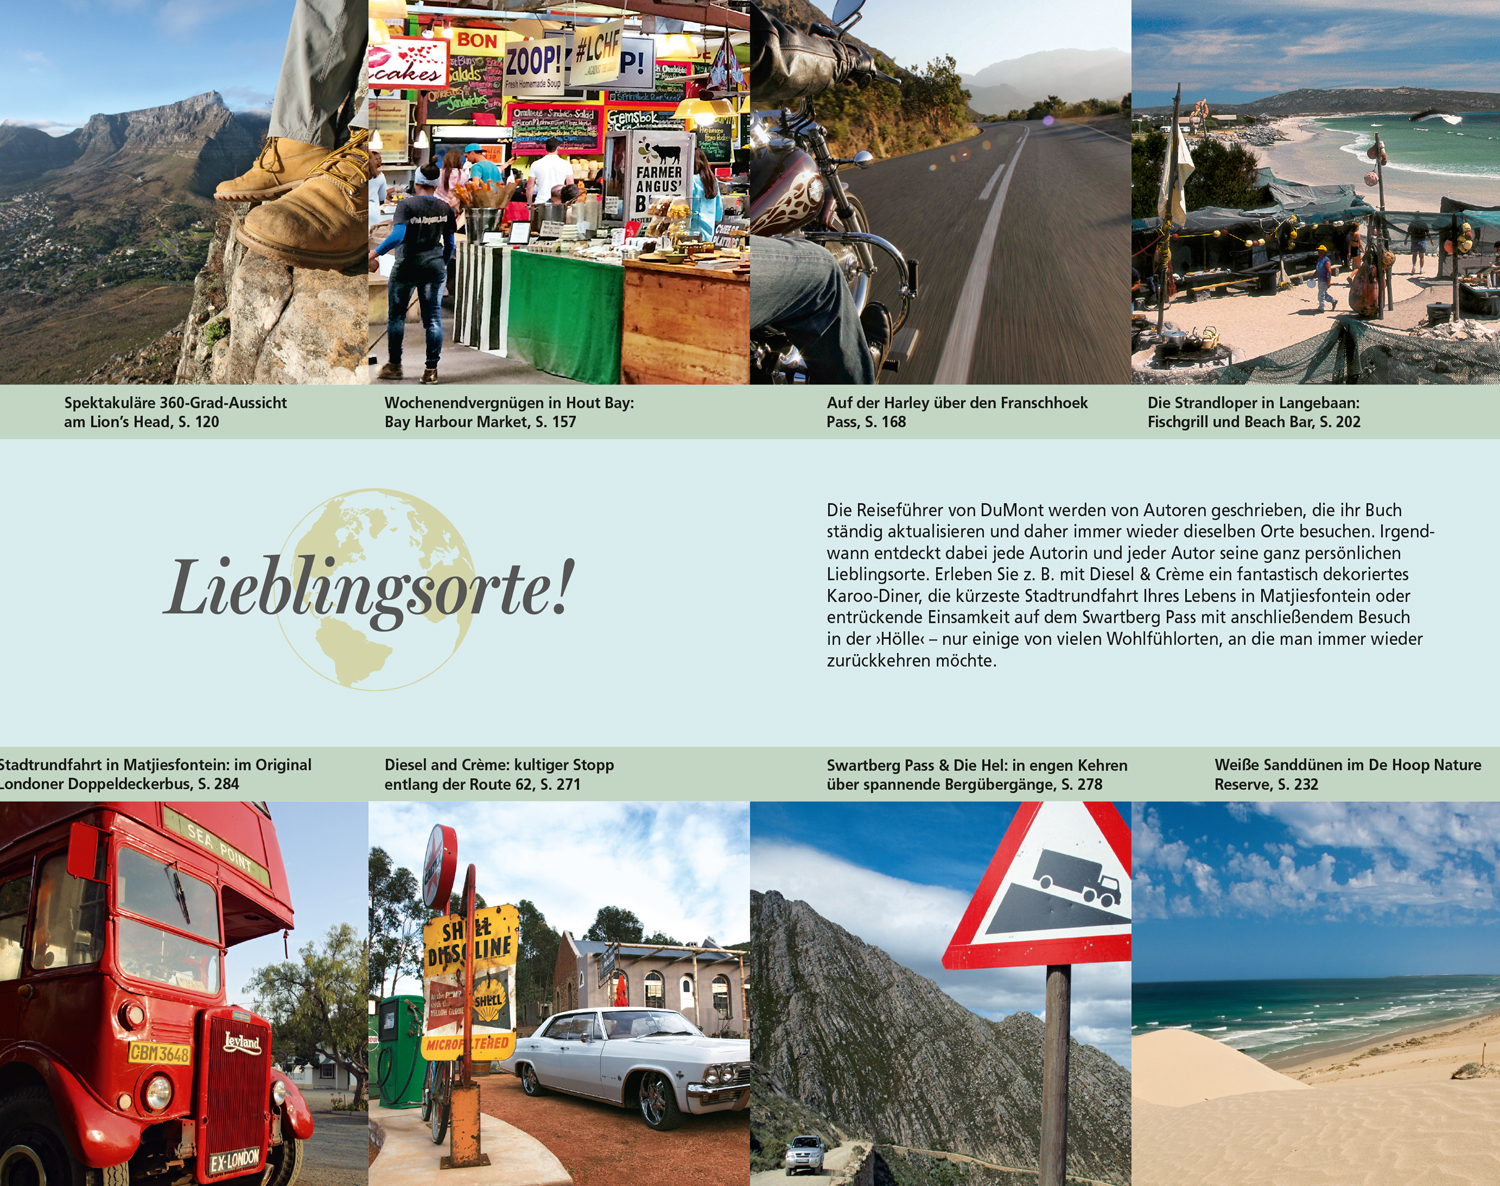 DuMont Reise-Taschenbuch Reiseführer Kapstadt & Kap-Provinz